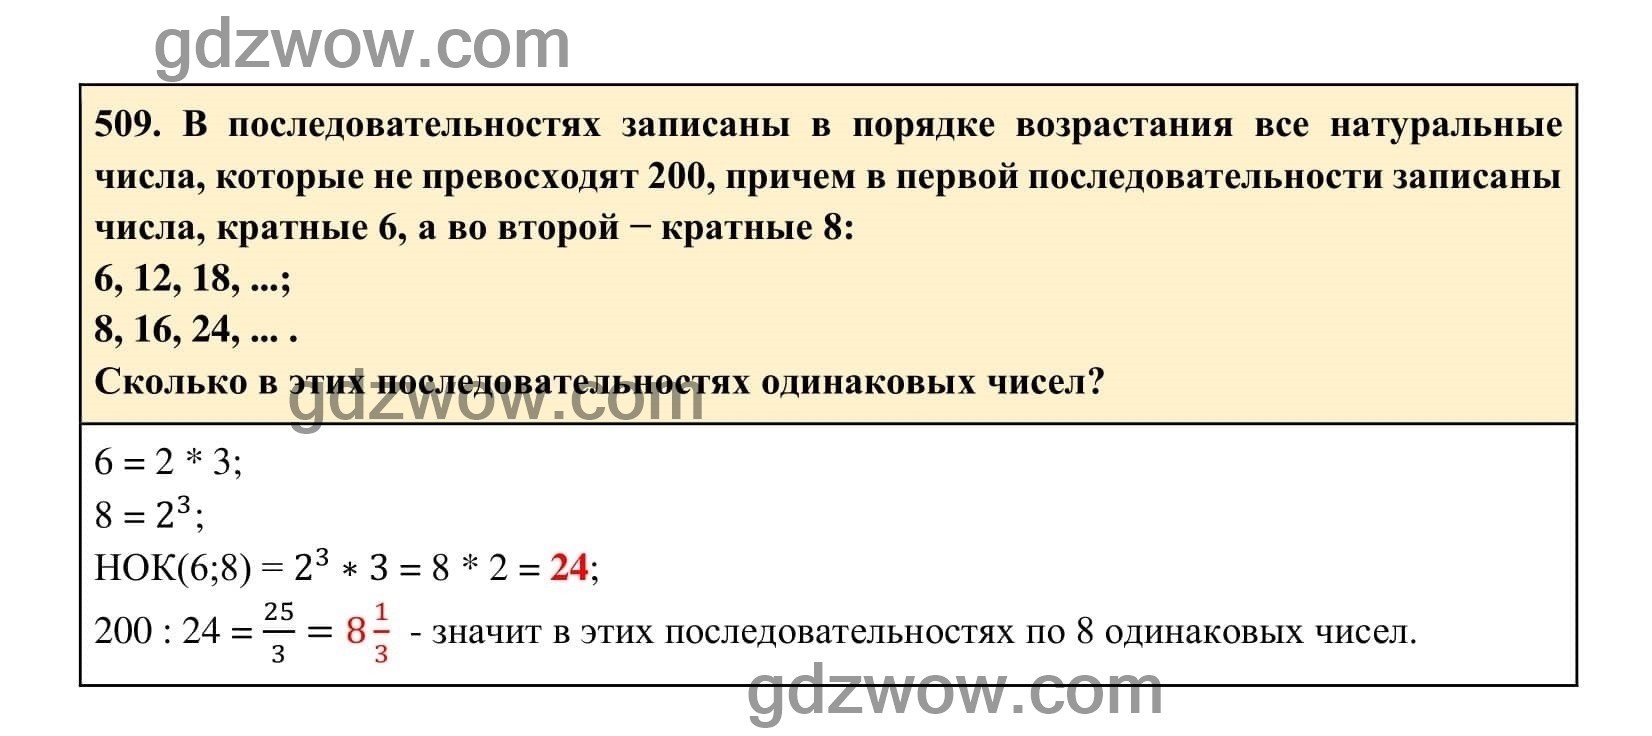 Упражнение 509 - ГДЗ по Алгебре 7 класс Учебник Макарычев (решебник) - GDZwow